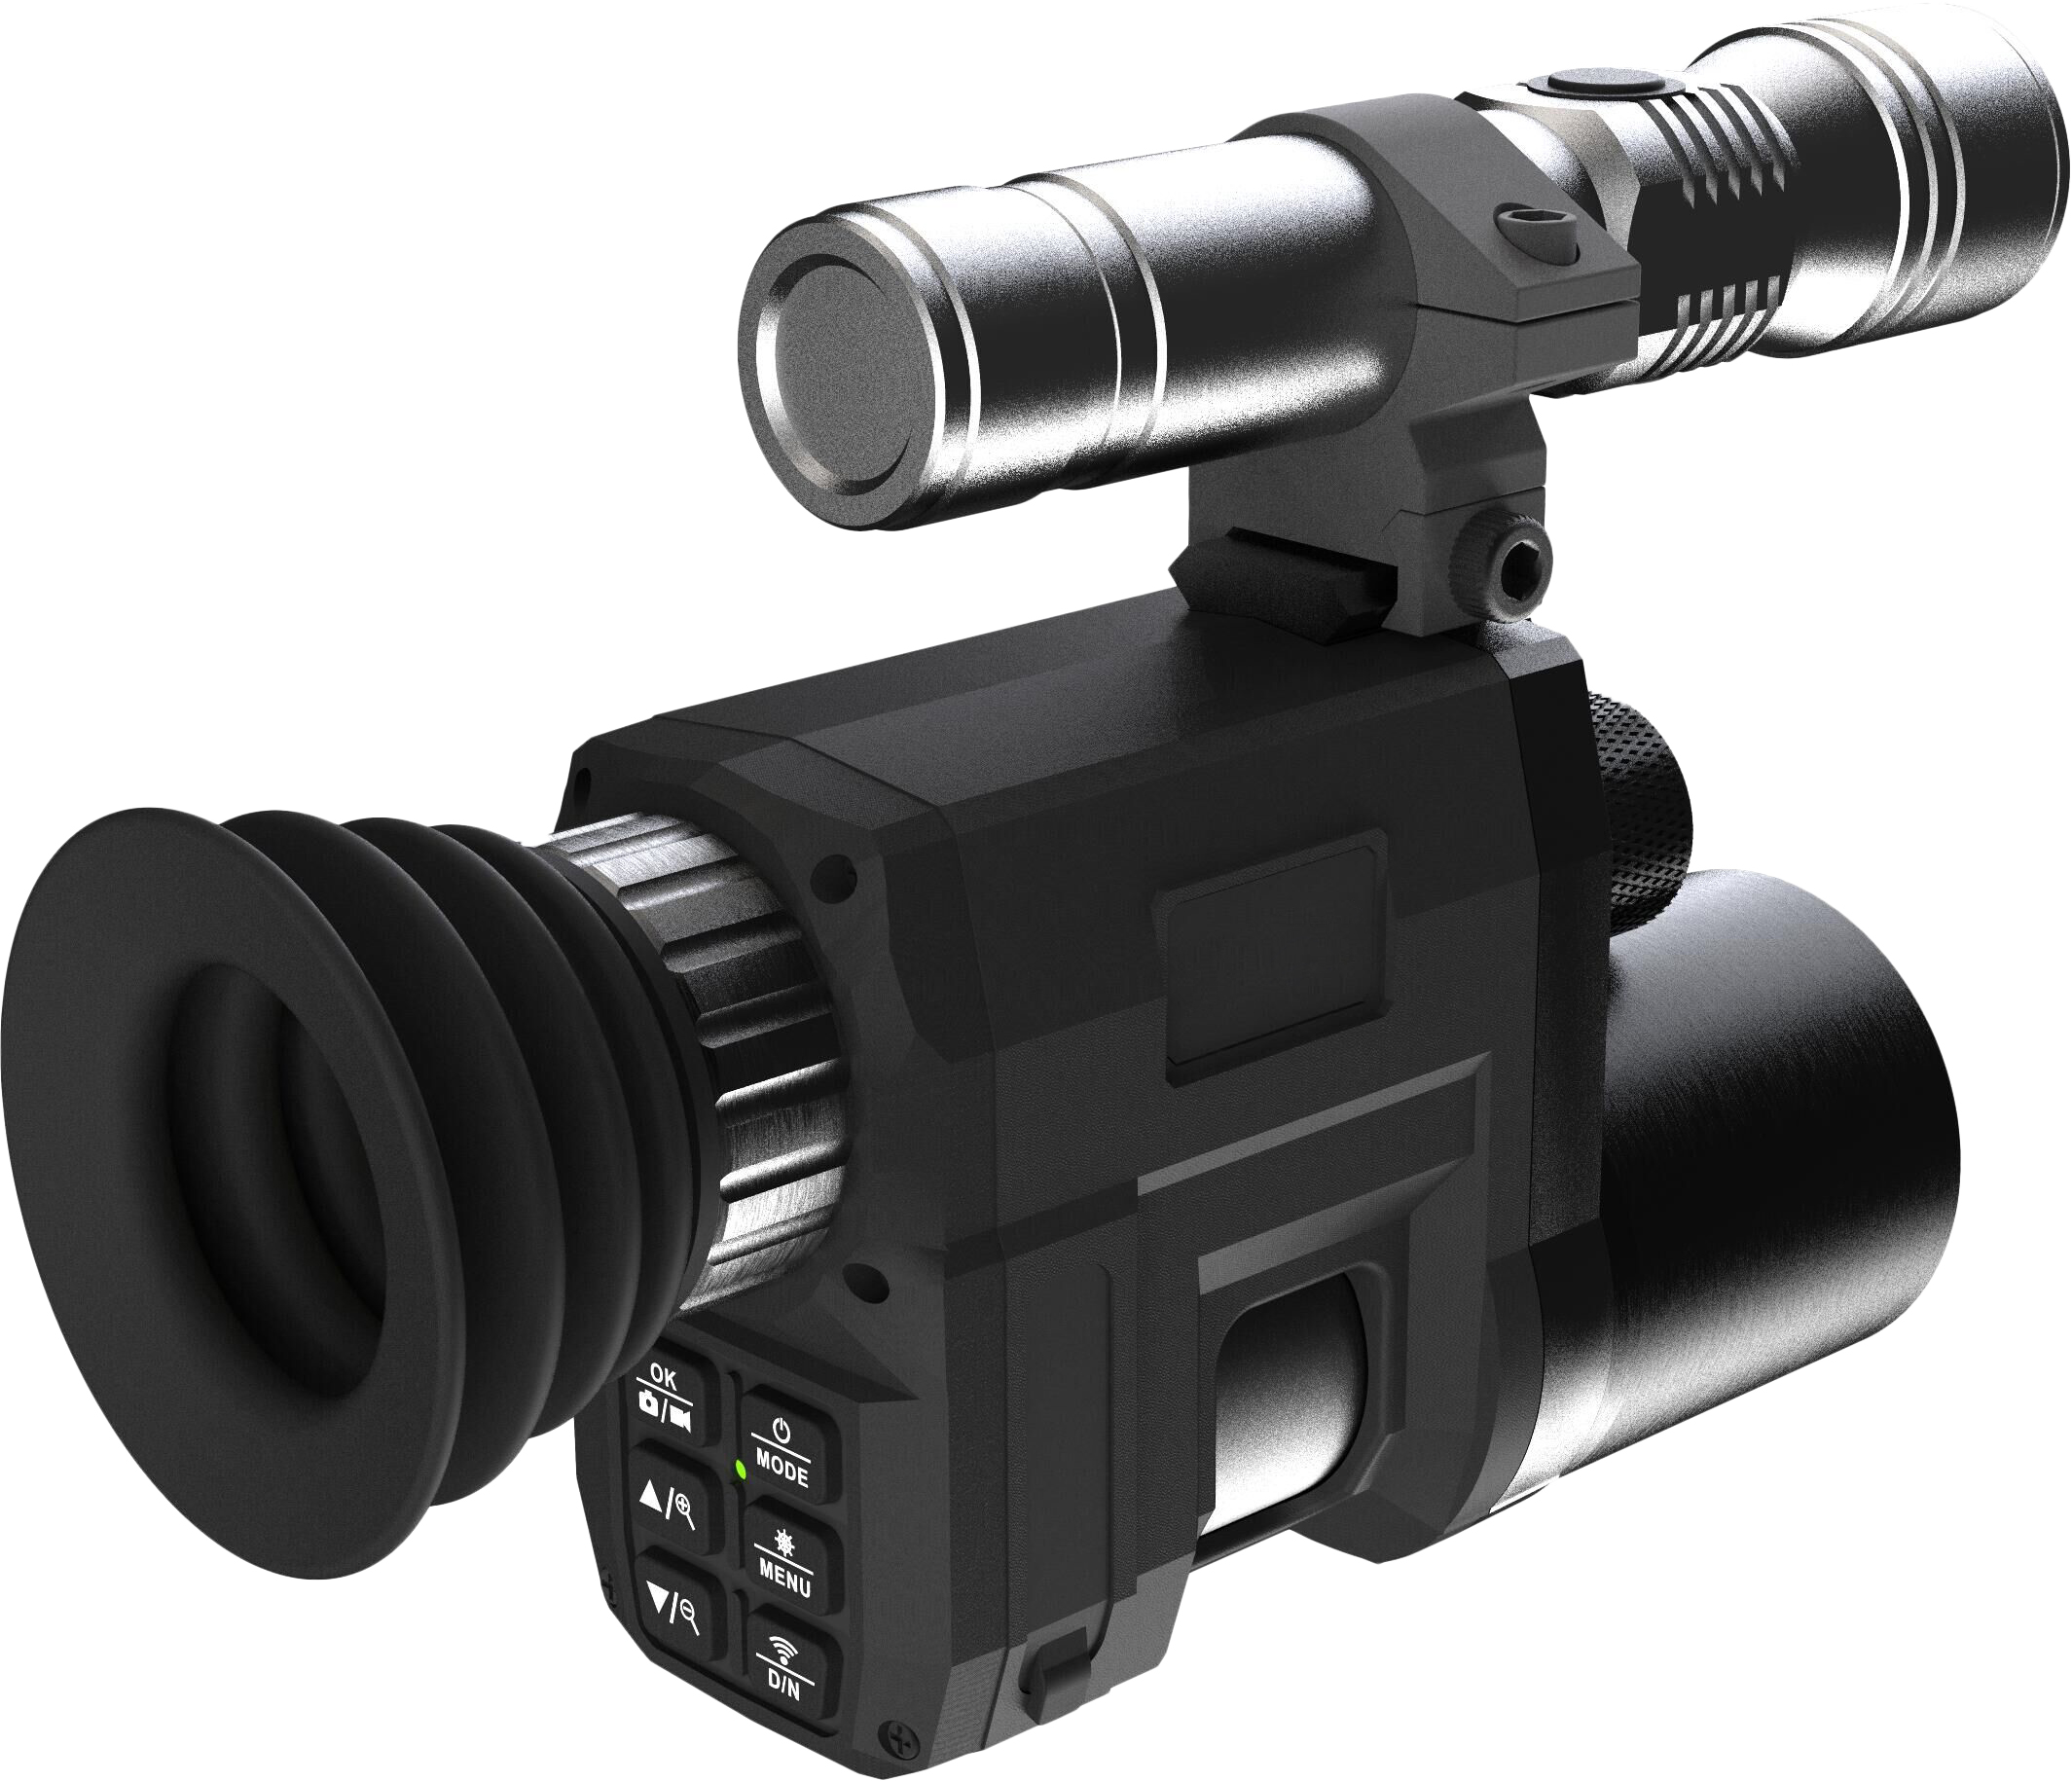 Монокуляр SUNTEK Night Vision Riflescope NV3000 монокуляр ночного видения suntek nv 300 night vision monocular